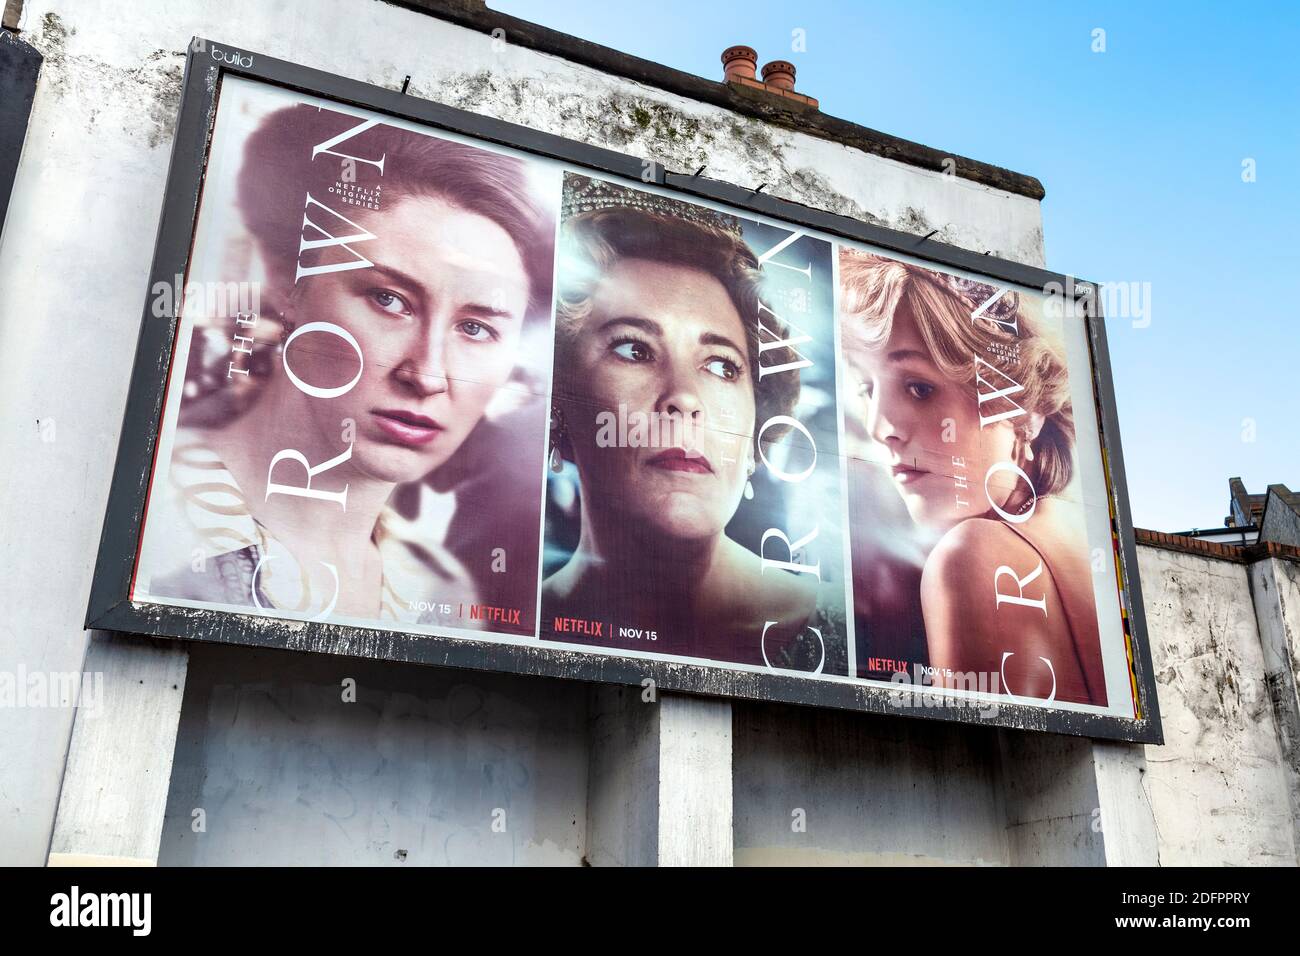 5 dicembre 2020 - Londra, UK - Poster pubblicità popolare Netflic TV show 'la corona' a Hackney Foto Stock